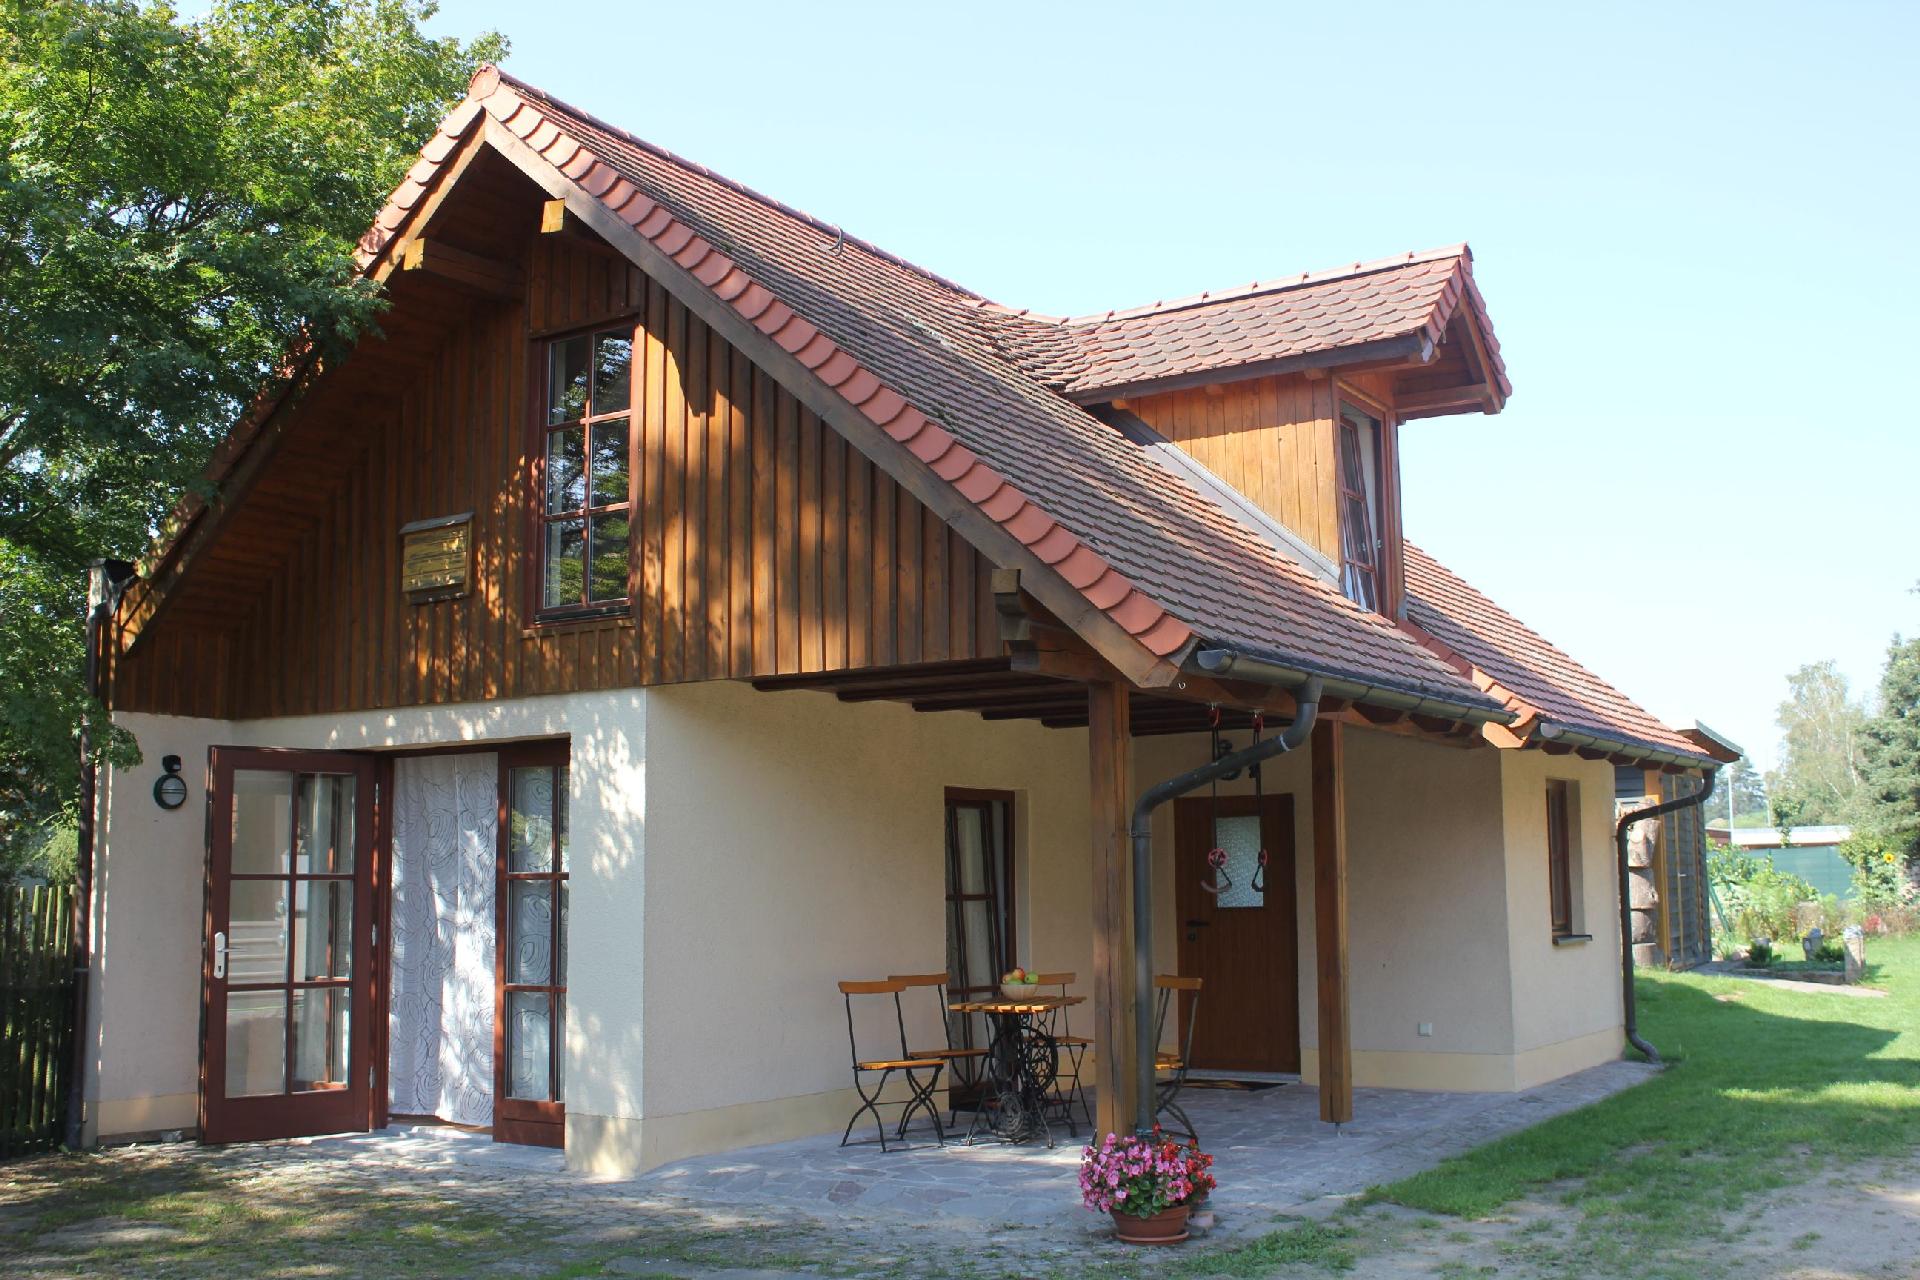 Ferienwohnung für 3 Personen  + 1 Kind ca. 46 Ferienhaus in der Sächsische Schweiz